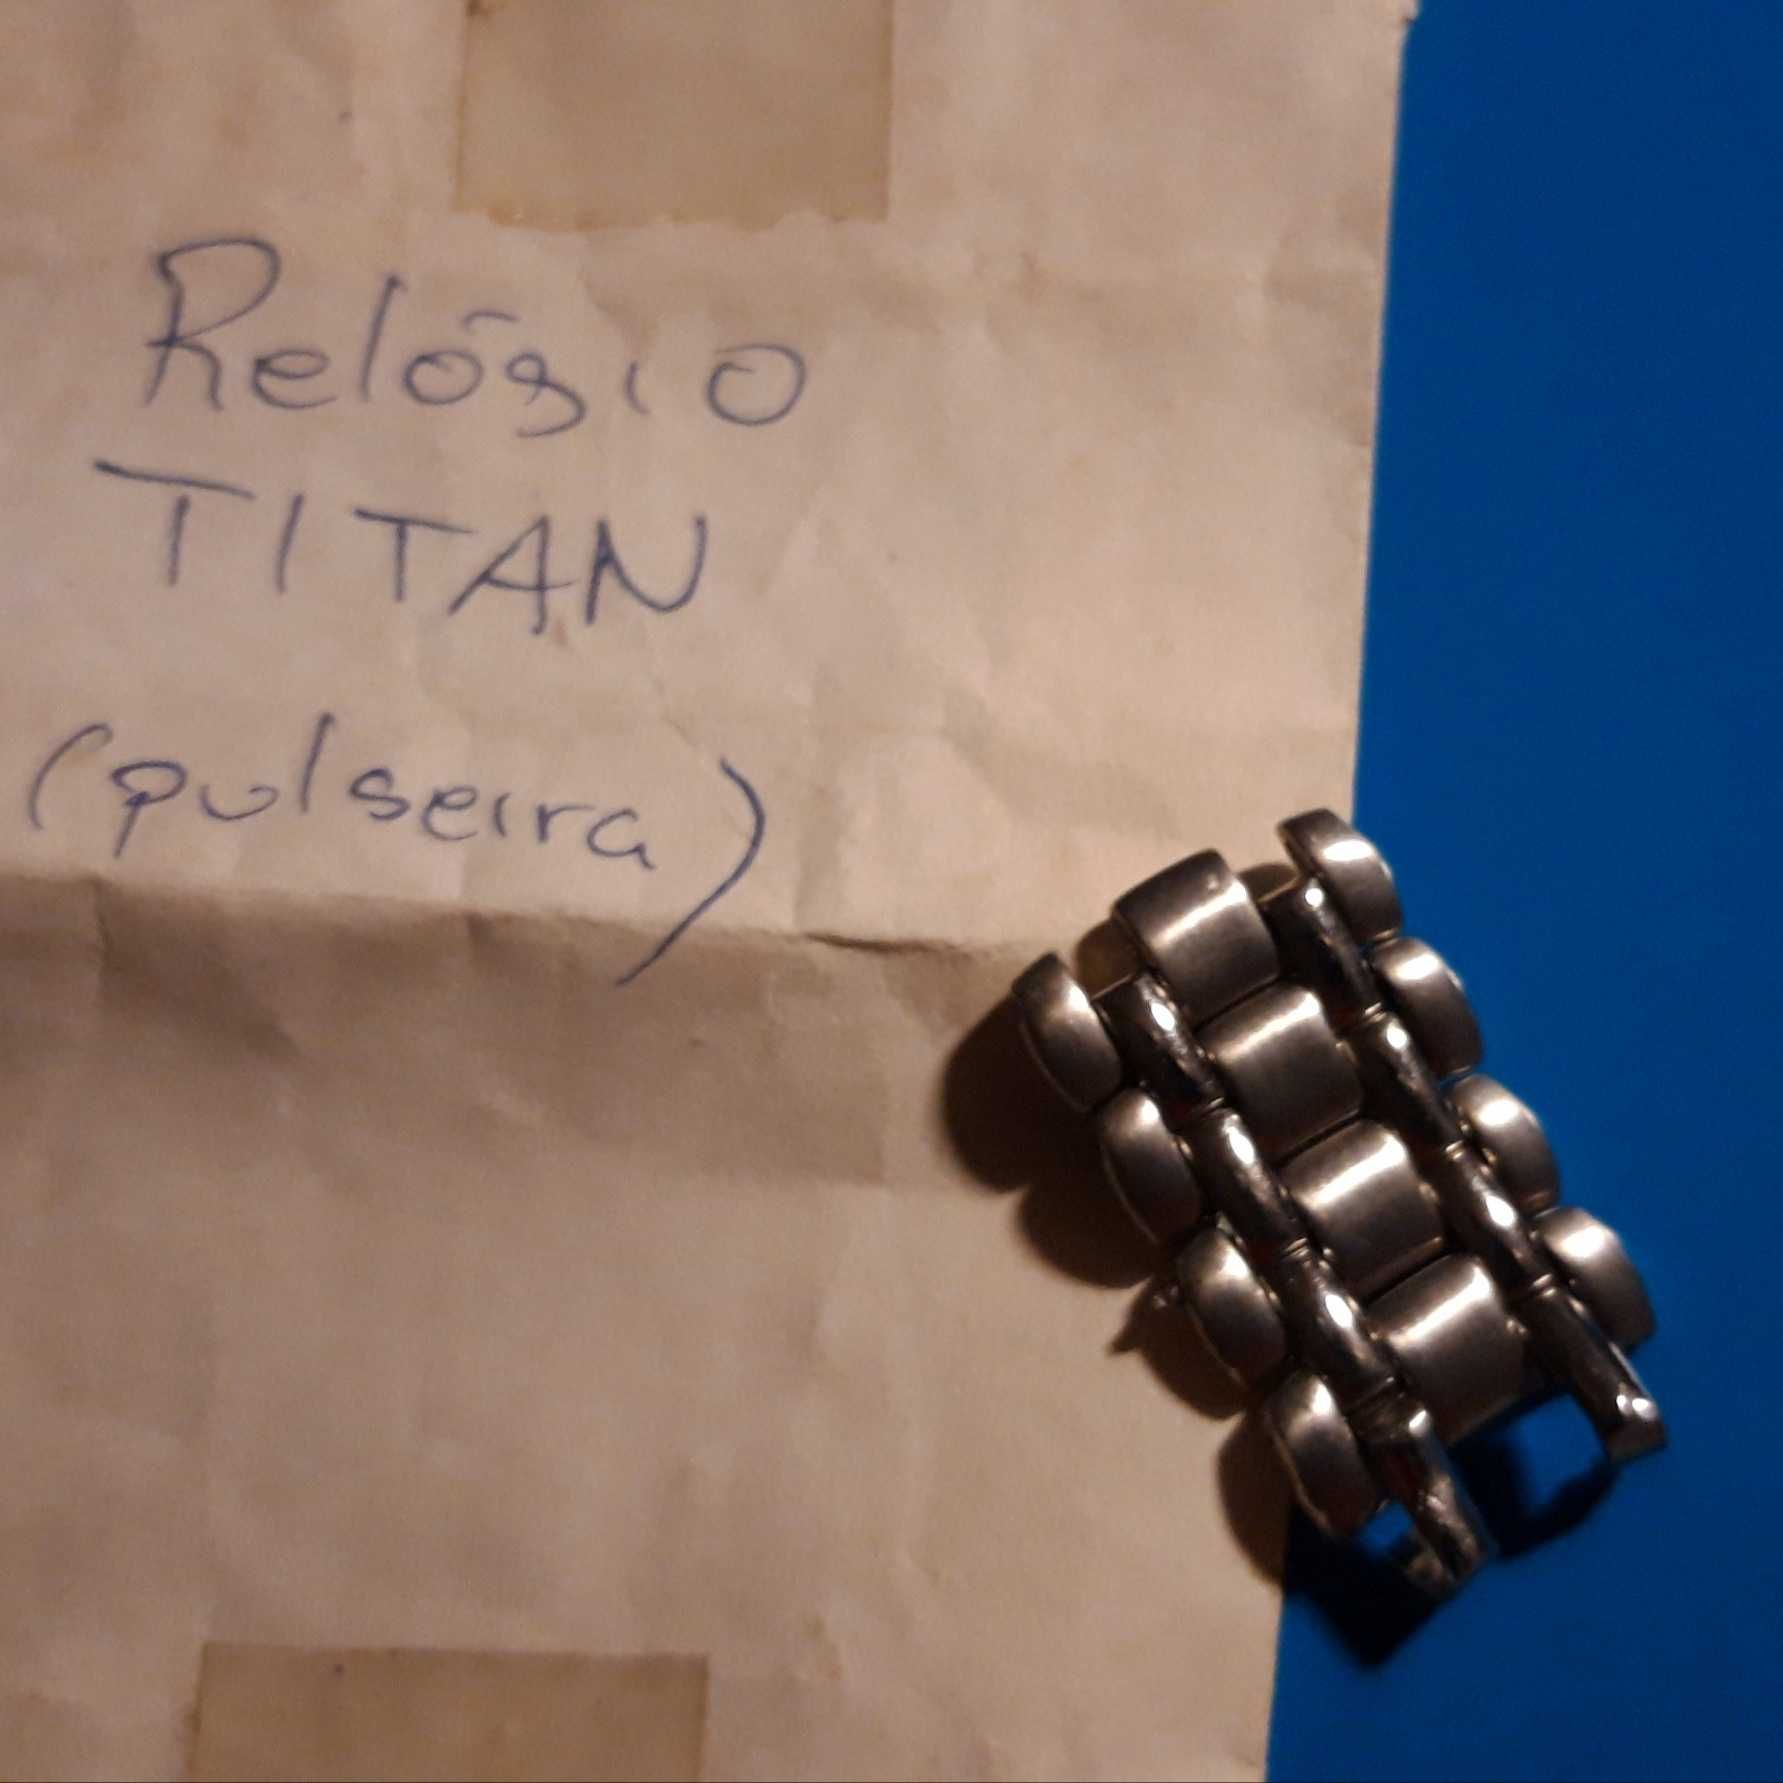 Relógio Titan (1995)